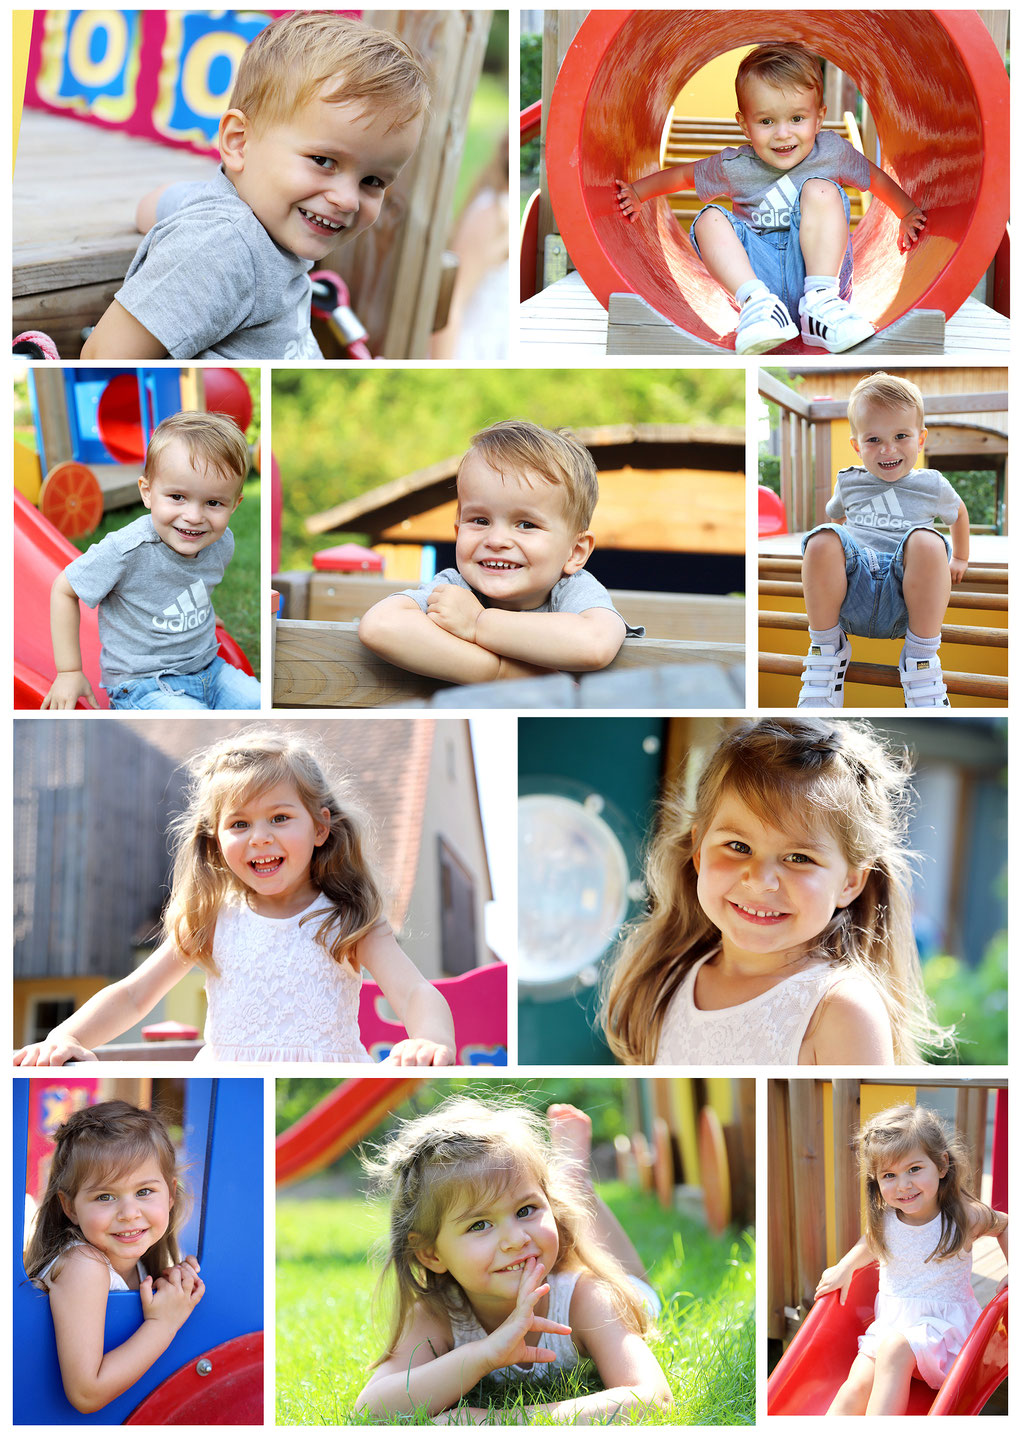 Erfahrene Kinderfotografin Elena Meier, natürliche Kinderfotos, Shooting outdoor, schöne Fotos von Kindern im Spiel, Kindergartenfotografie Fürth